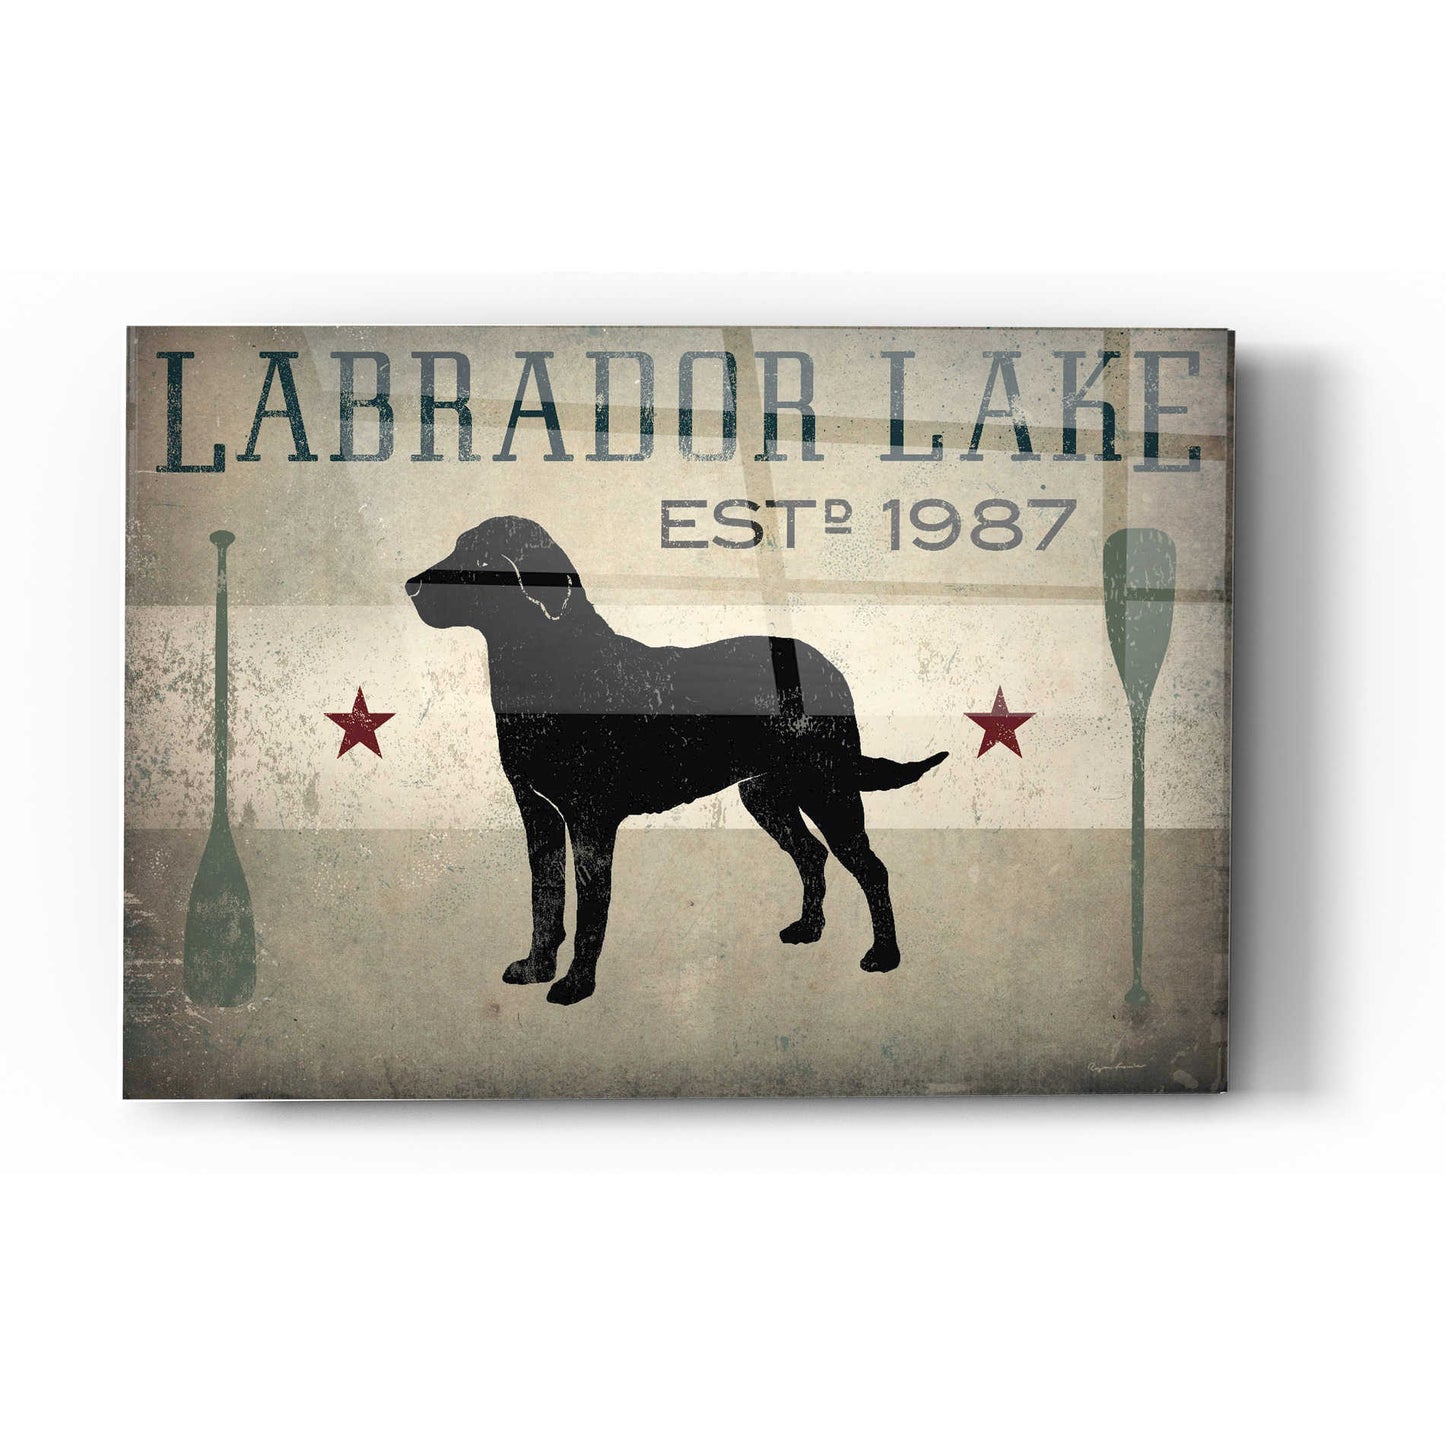 Epic Art 'Labrador Lake' by Ryan Fowler, Acrylic Glass Wall Art,24x36